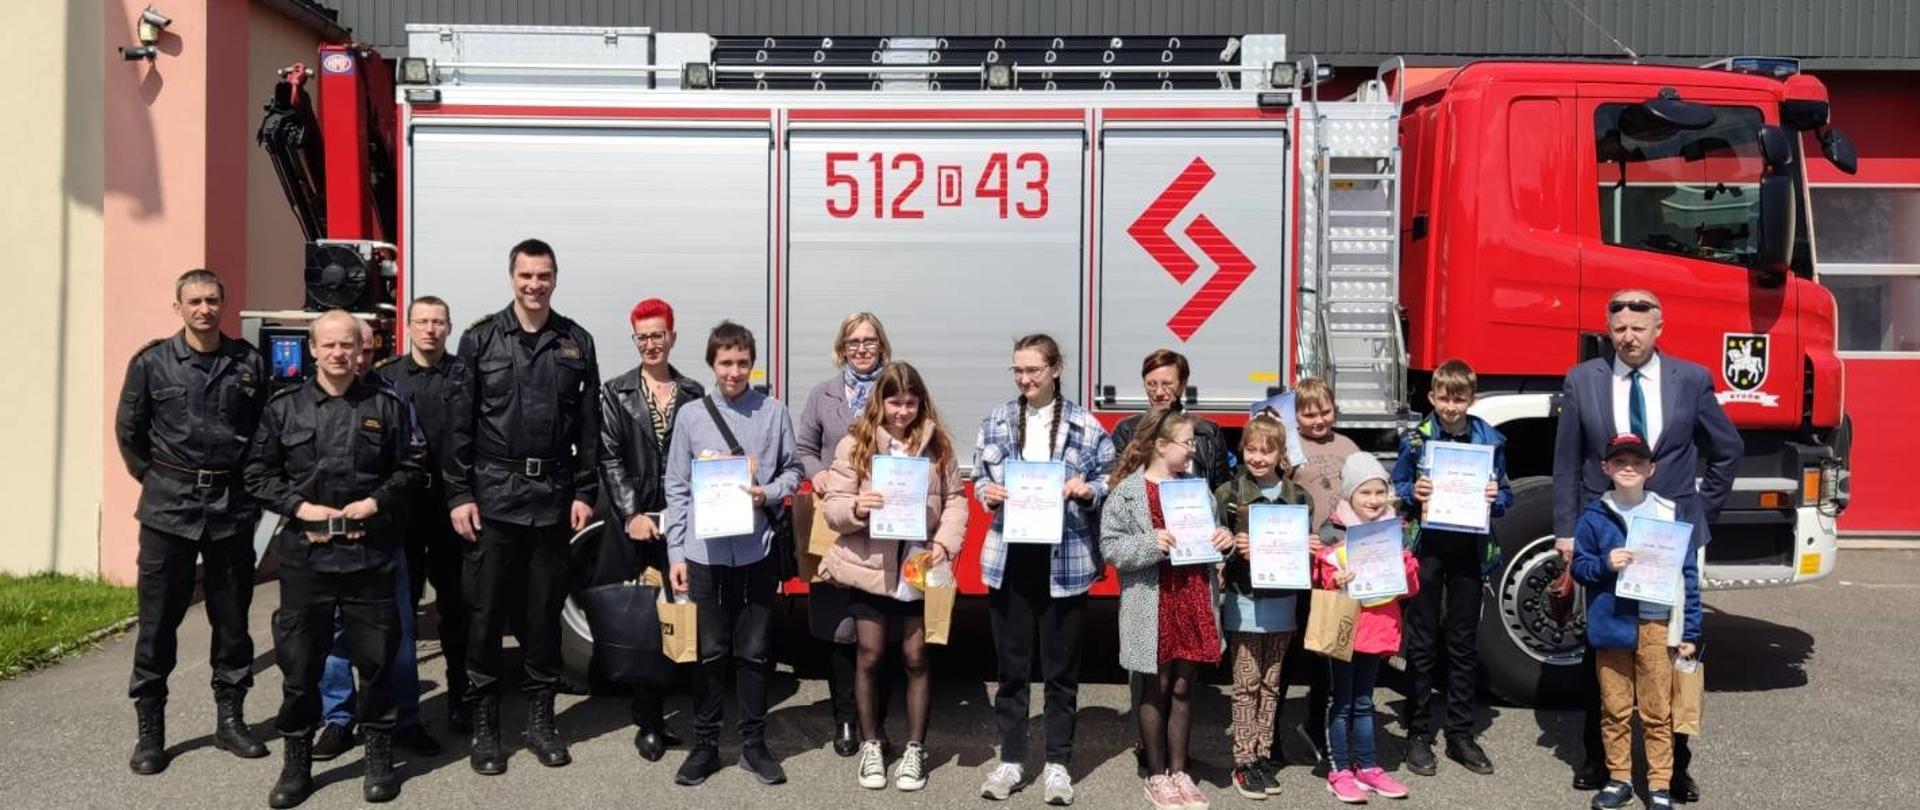 Na zdjęciu widoczni są uczestnicy eliminacji powiatowych konkursu wiedzy pożarniczej, opiekunowie oraz komisja konkursowa wraz z Komendantem Powiatowym PSP w Oleśnicy. 